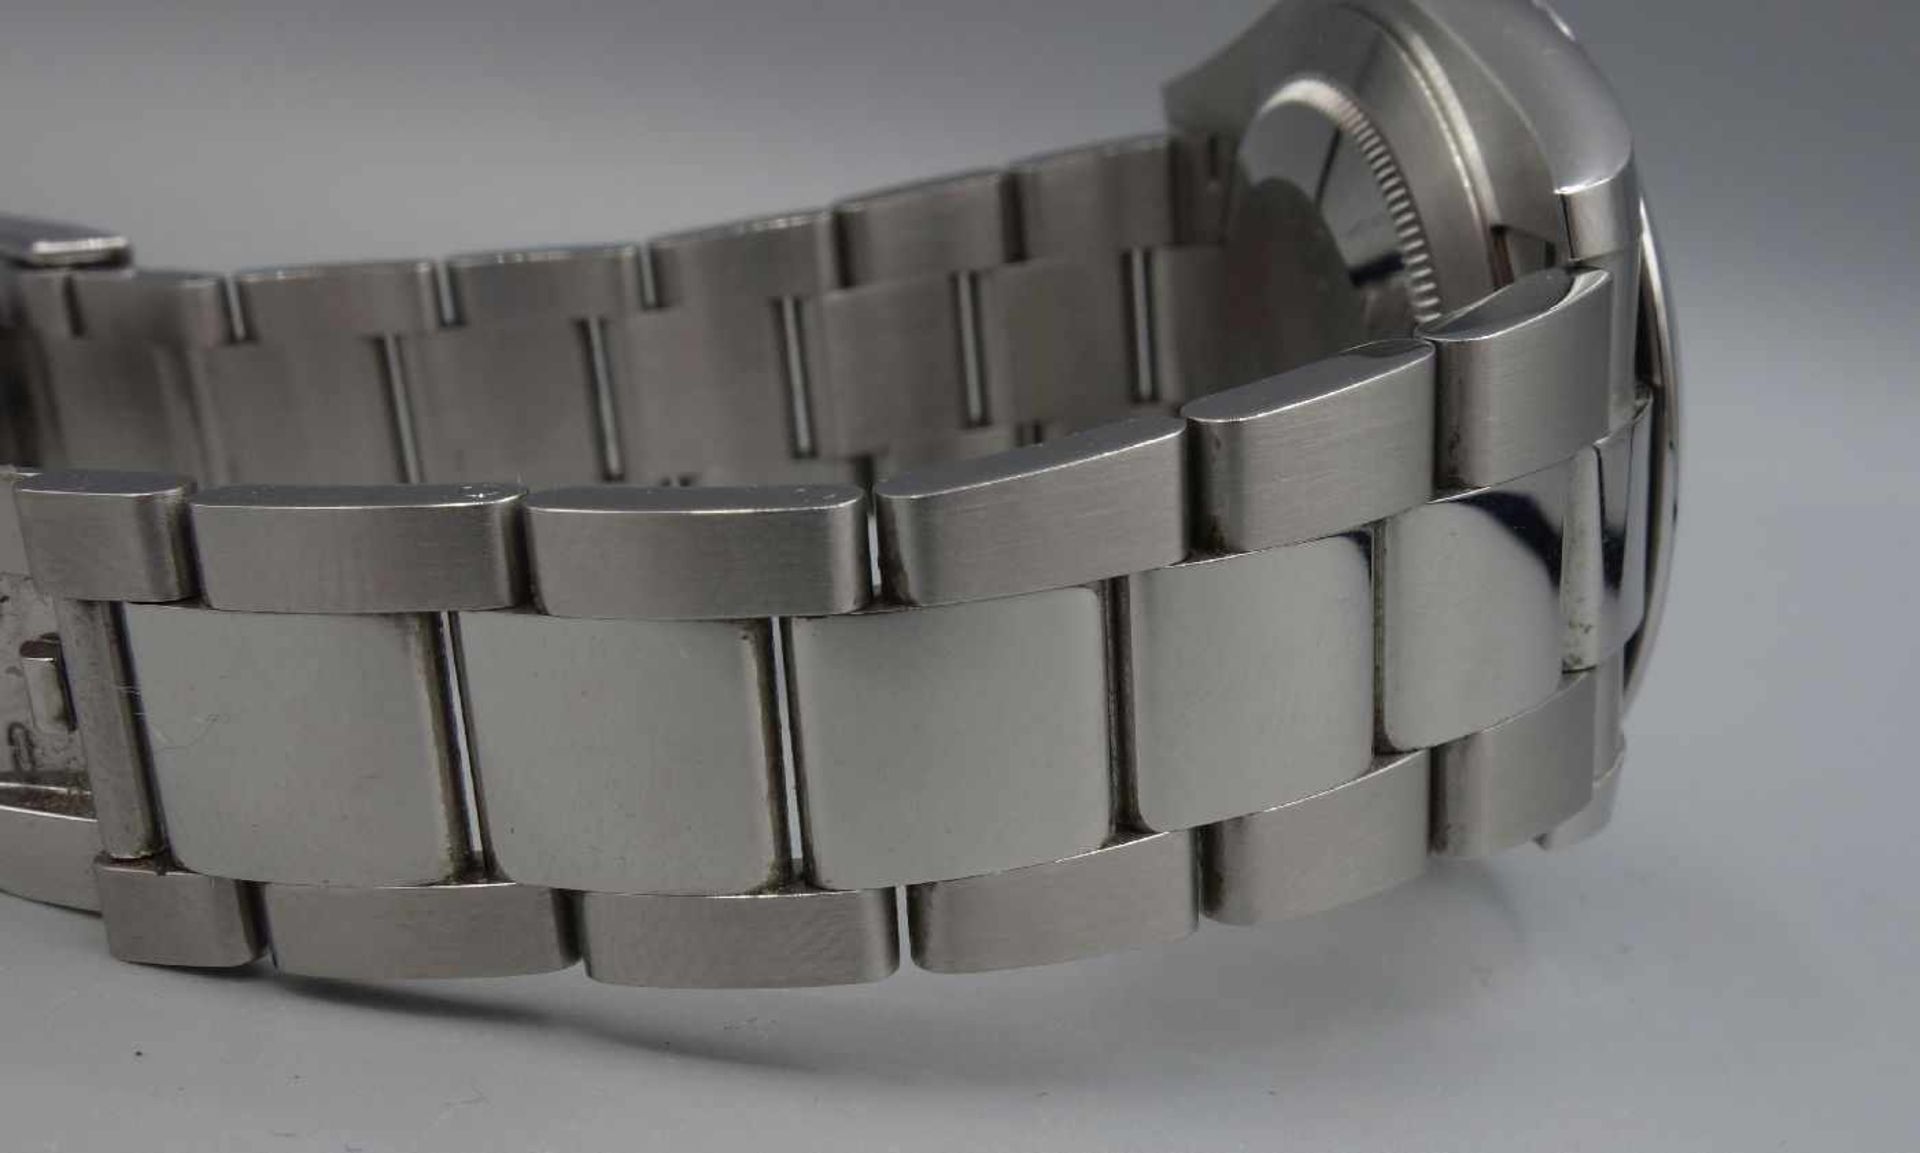 ARMBANDUHR - ROLEX OYSTER PERPETUAL DATEJUST / wristwatch, Rolex Watch Company / Schweiz, erworben - Bild 10 aus 15